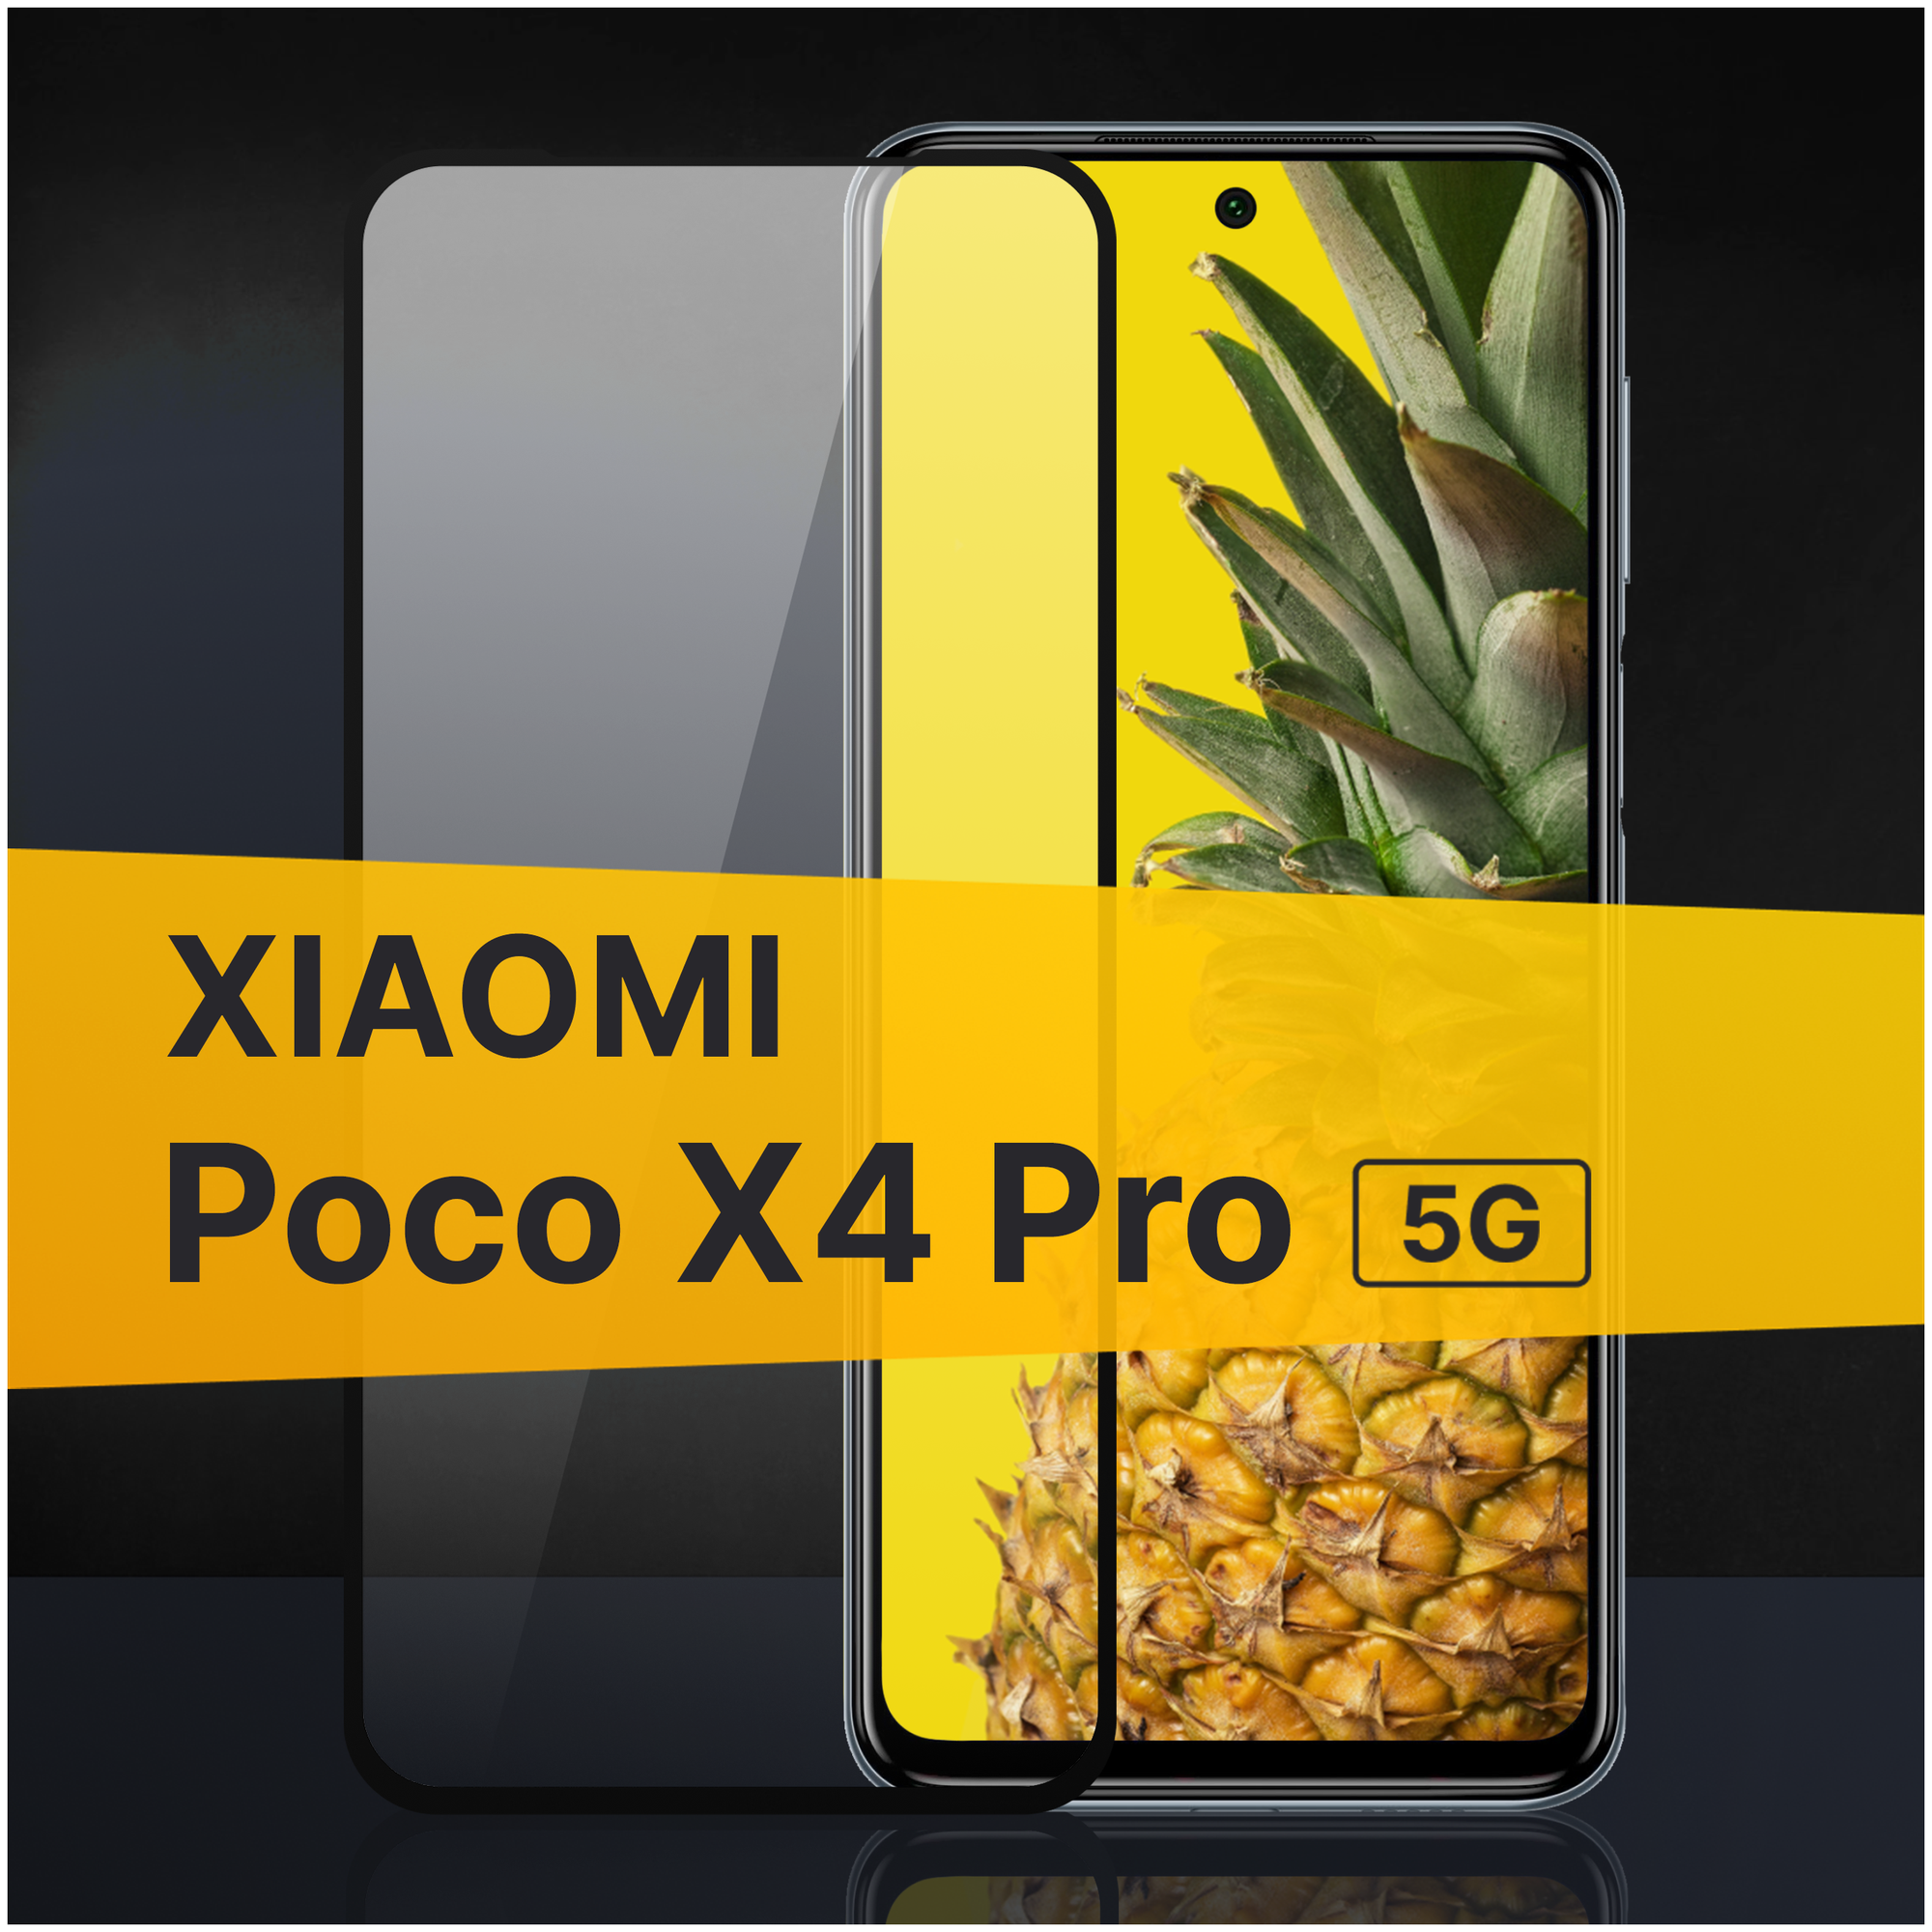 Противоударное защитное стекло для телефона Xiaomi Poco X4 Pro 5G / Полноклеевое 3D стекло с олеофобным покрытием на смартфон Сяоми Поко Х4 Про 5Г / С черной рамкой